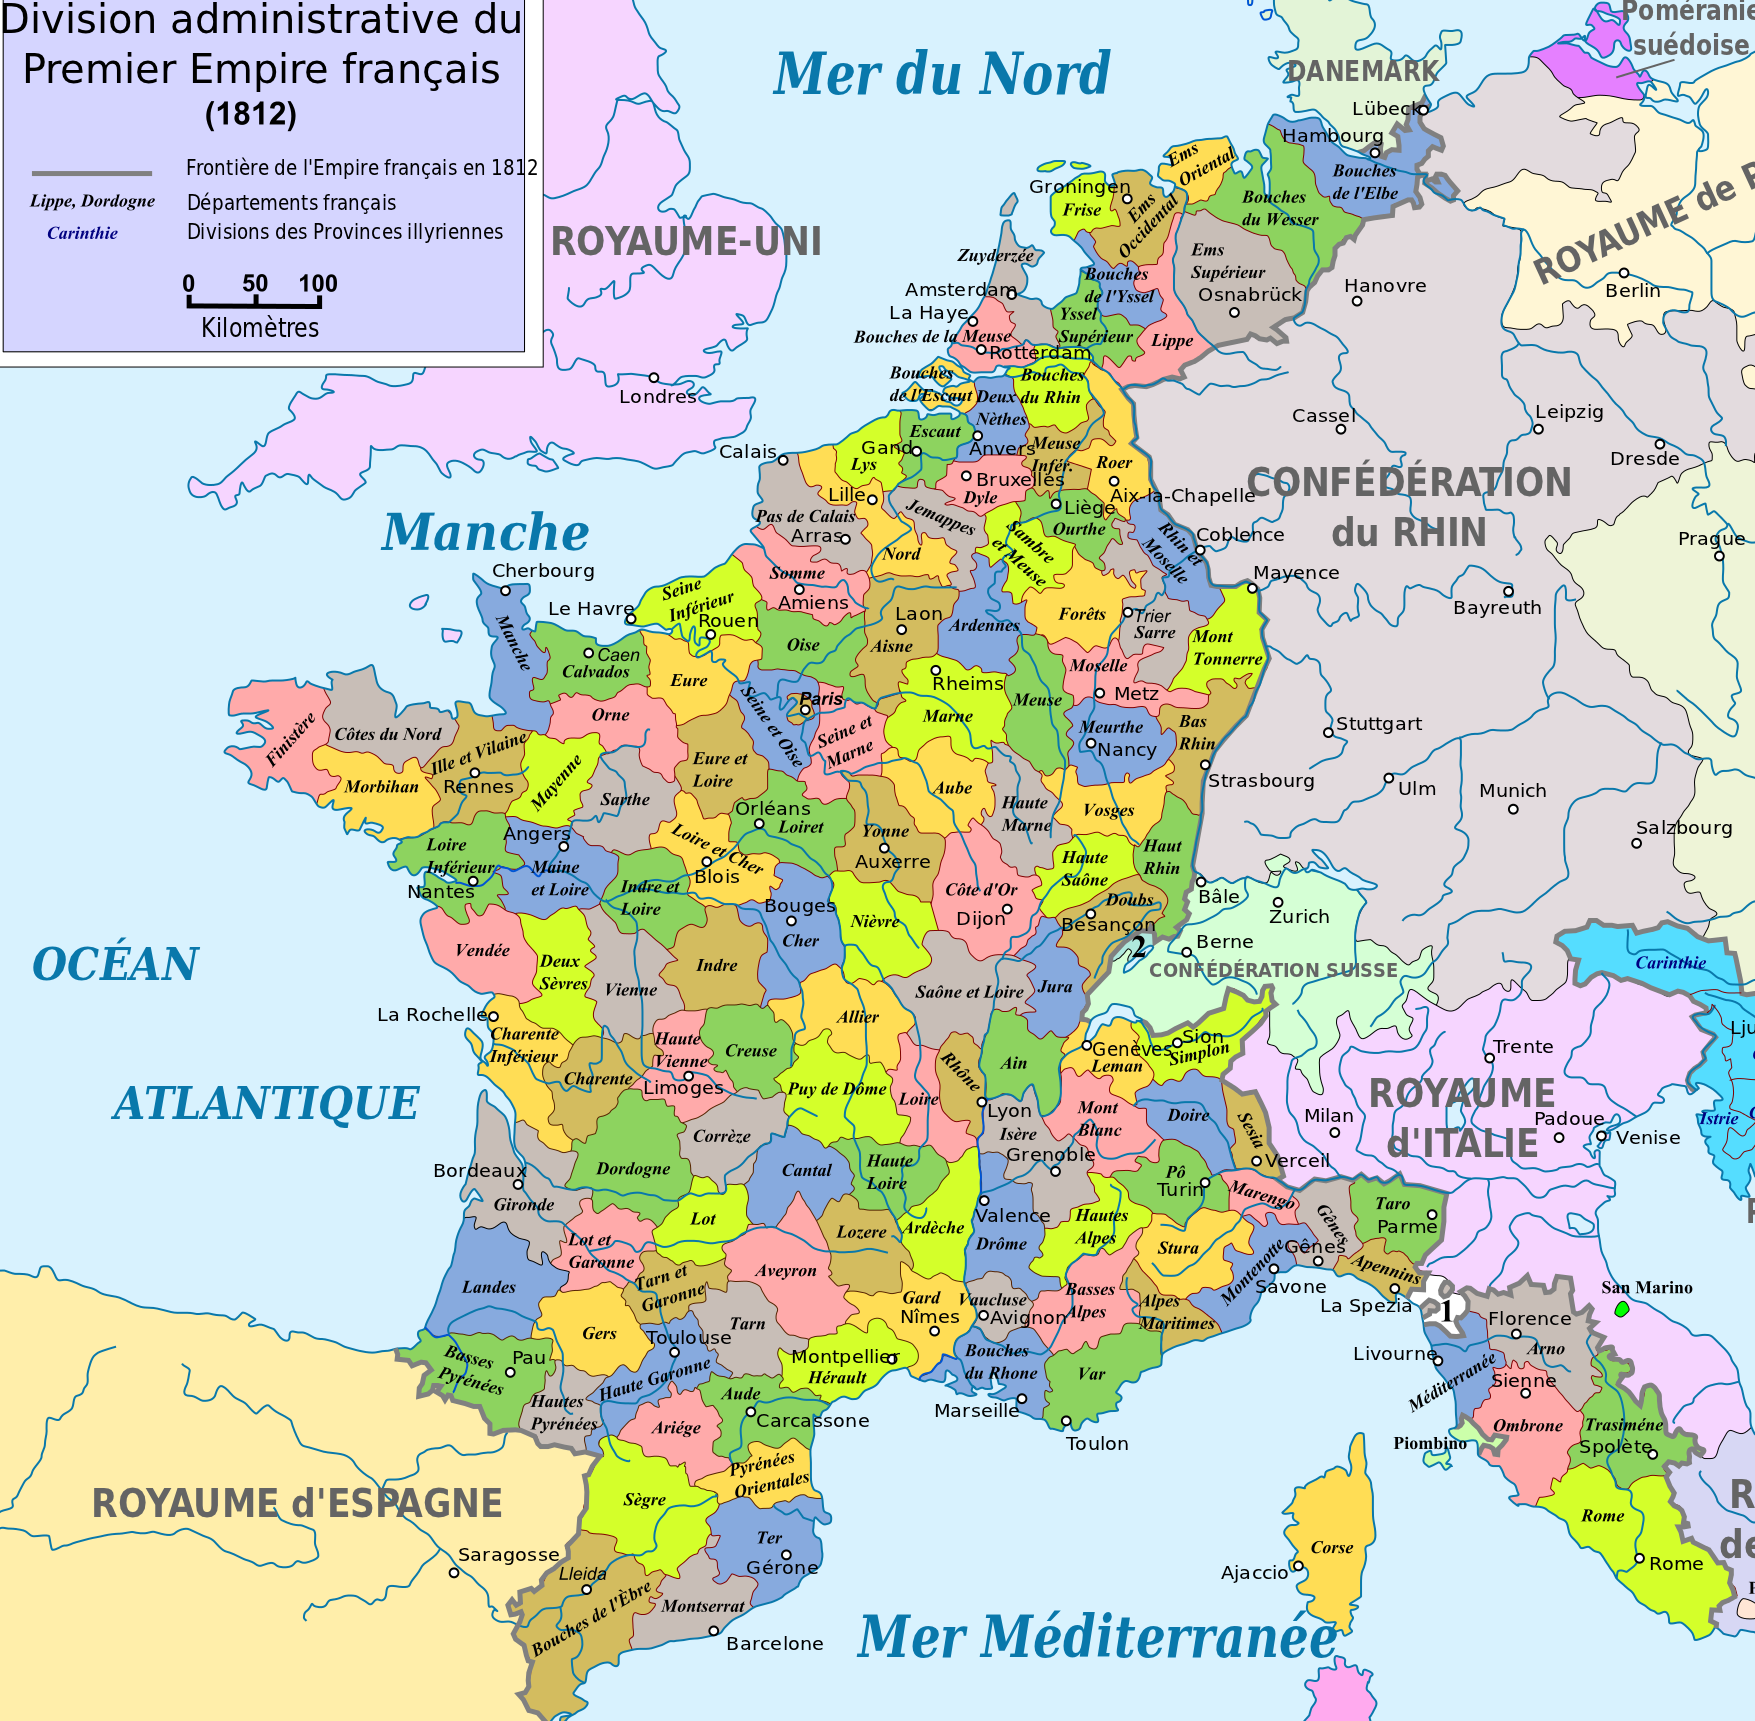 Els Bonaparte incorporen Catalunya a França